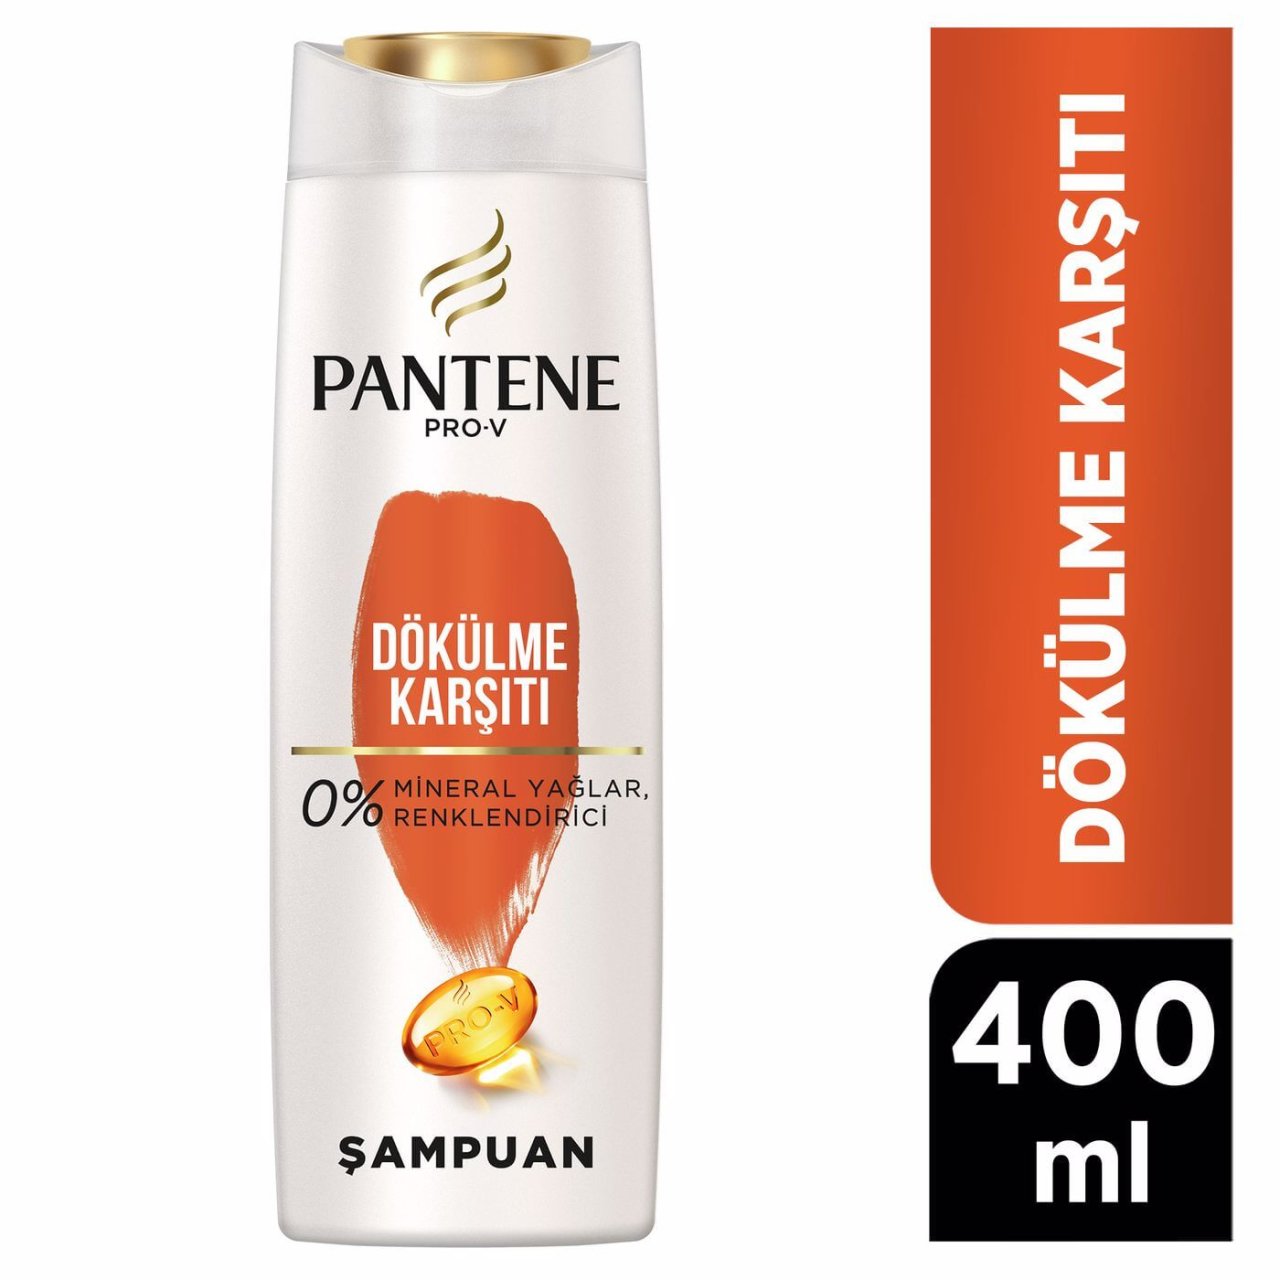 Pantene Şampuan Dökülme Karşıtı 400ml